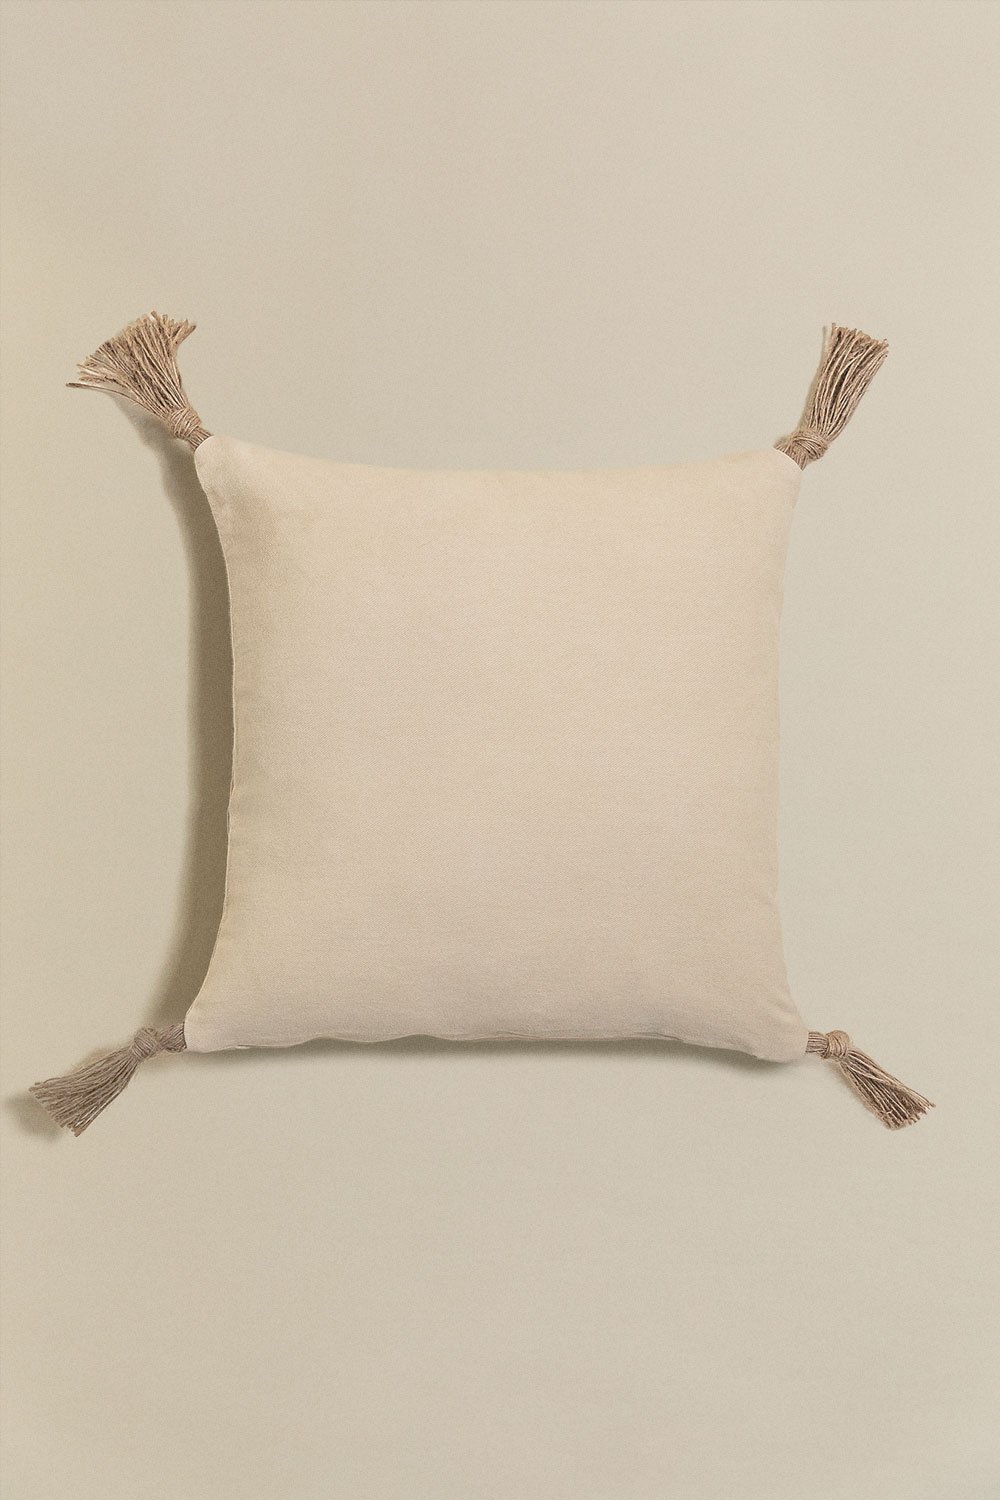 Cuscino quadrato in cotone (45x45 cm) Almiz  , immagine della galleria 1